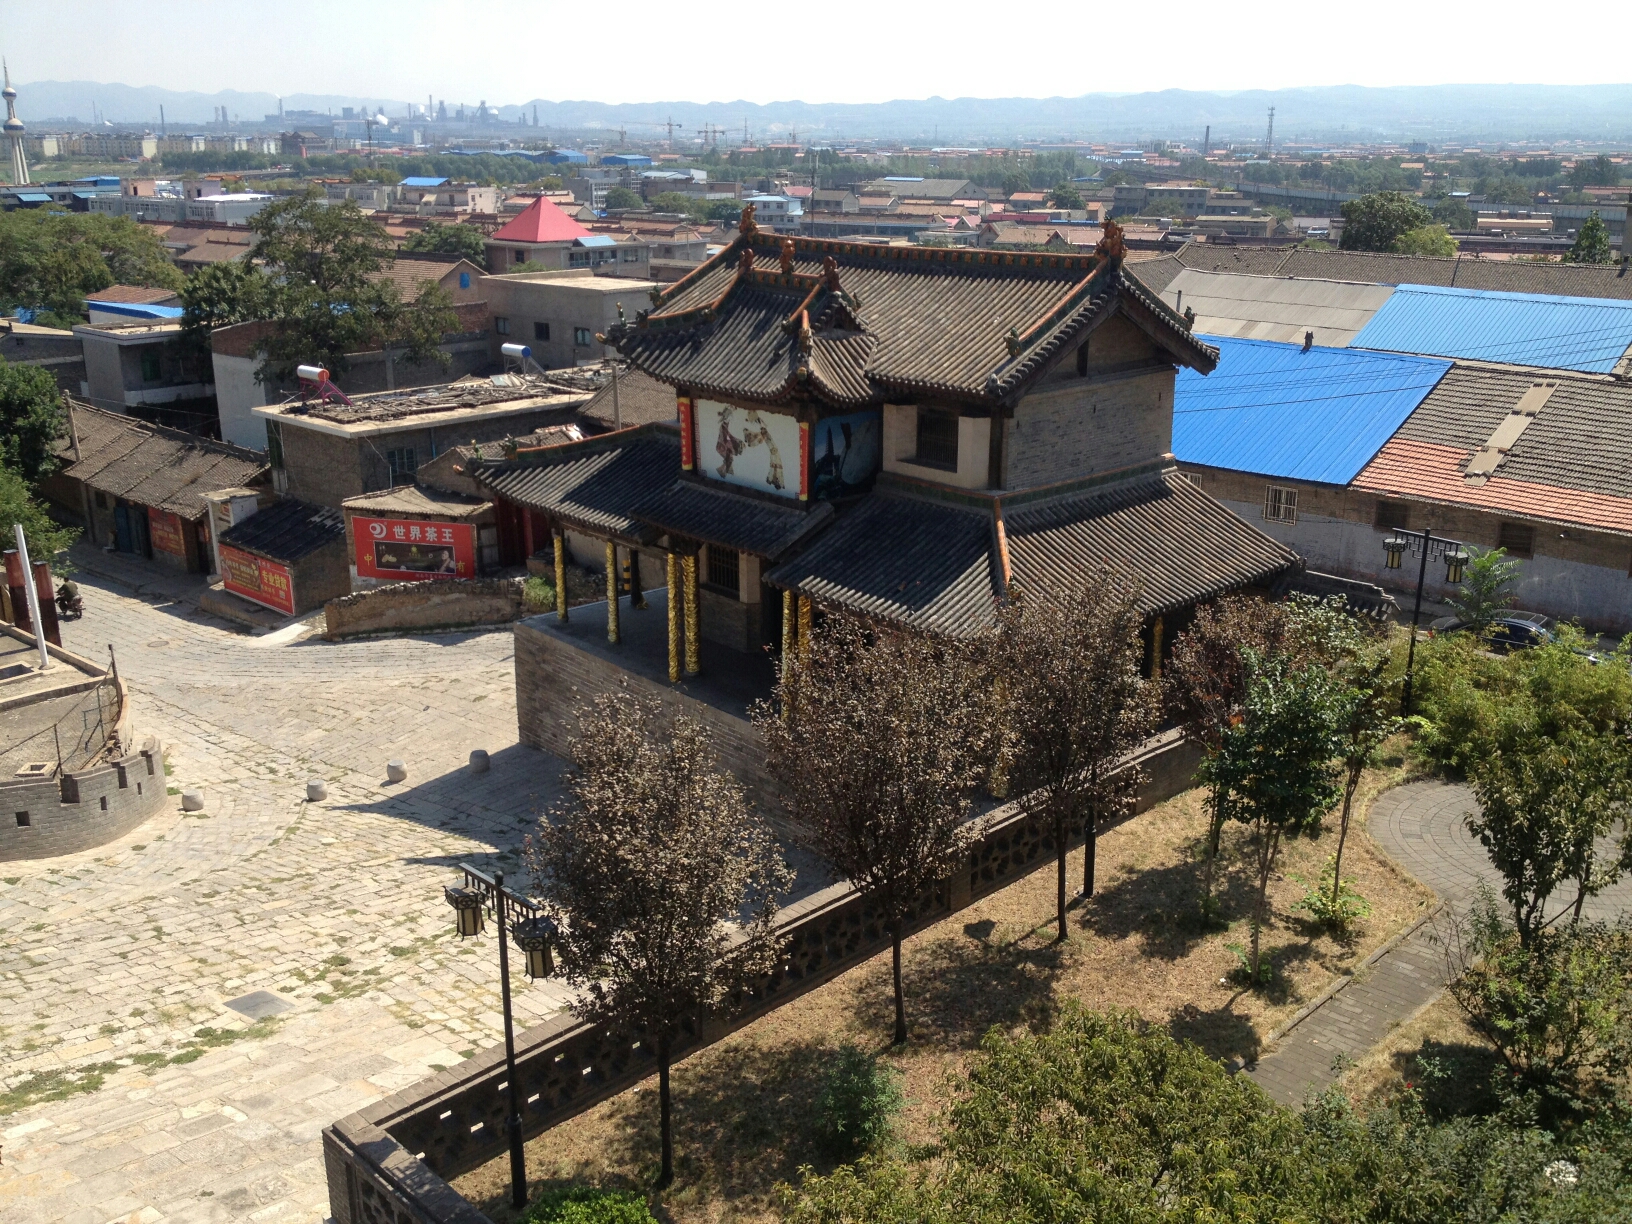 07游新绛城隍庙,绛州府大堂   绛州城隍庙位于 新绛 县衙坡上,与绛州